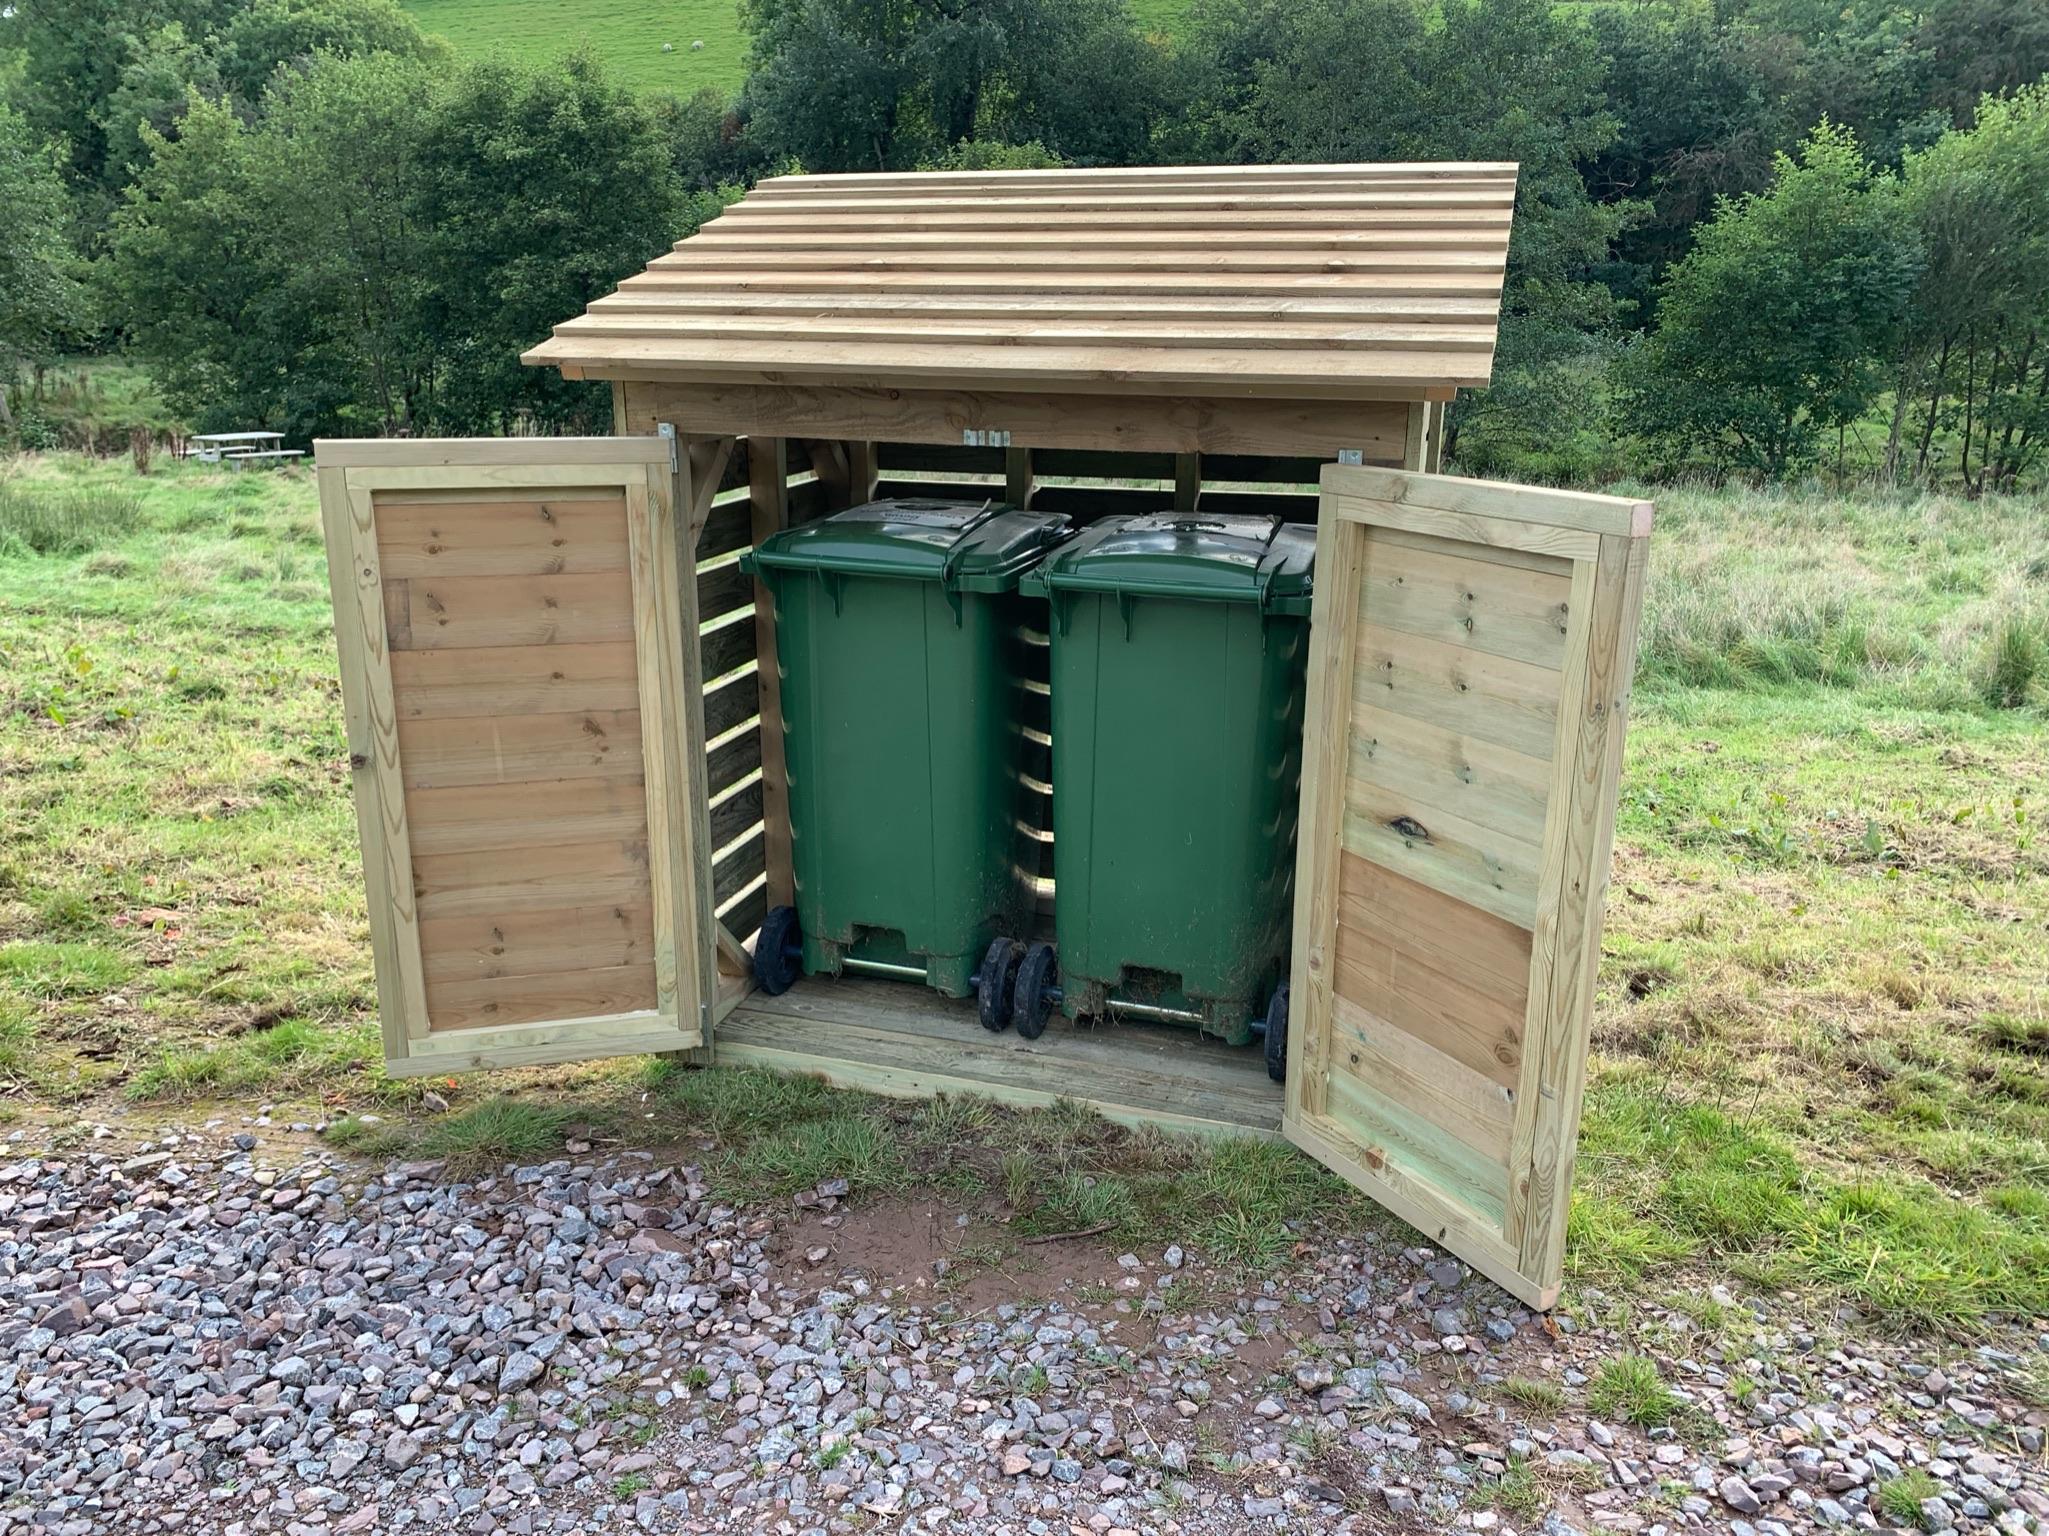 Timber wheelie bin storage unit